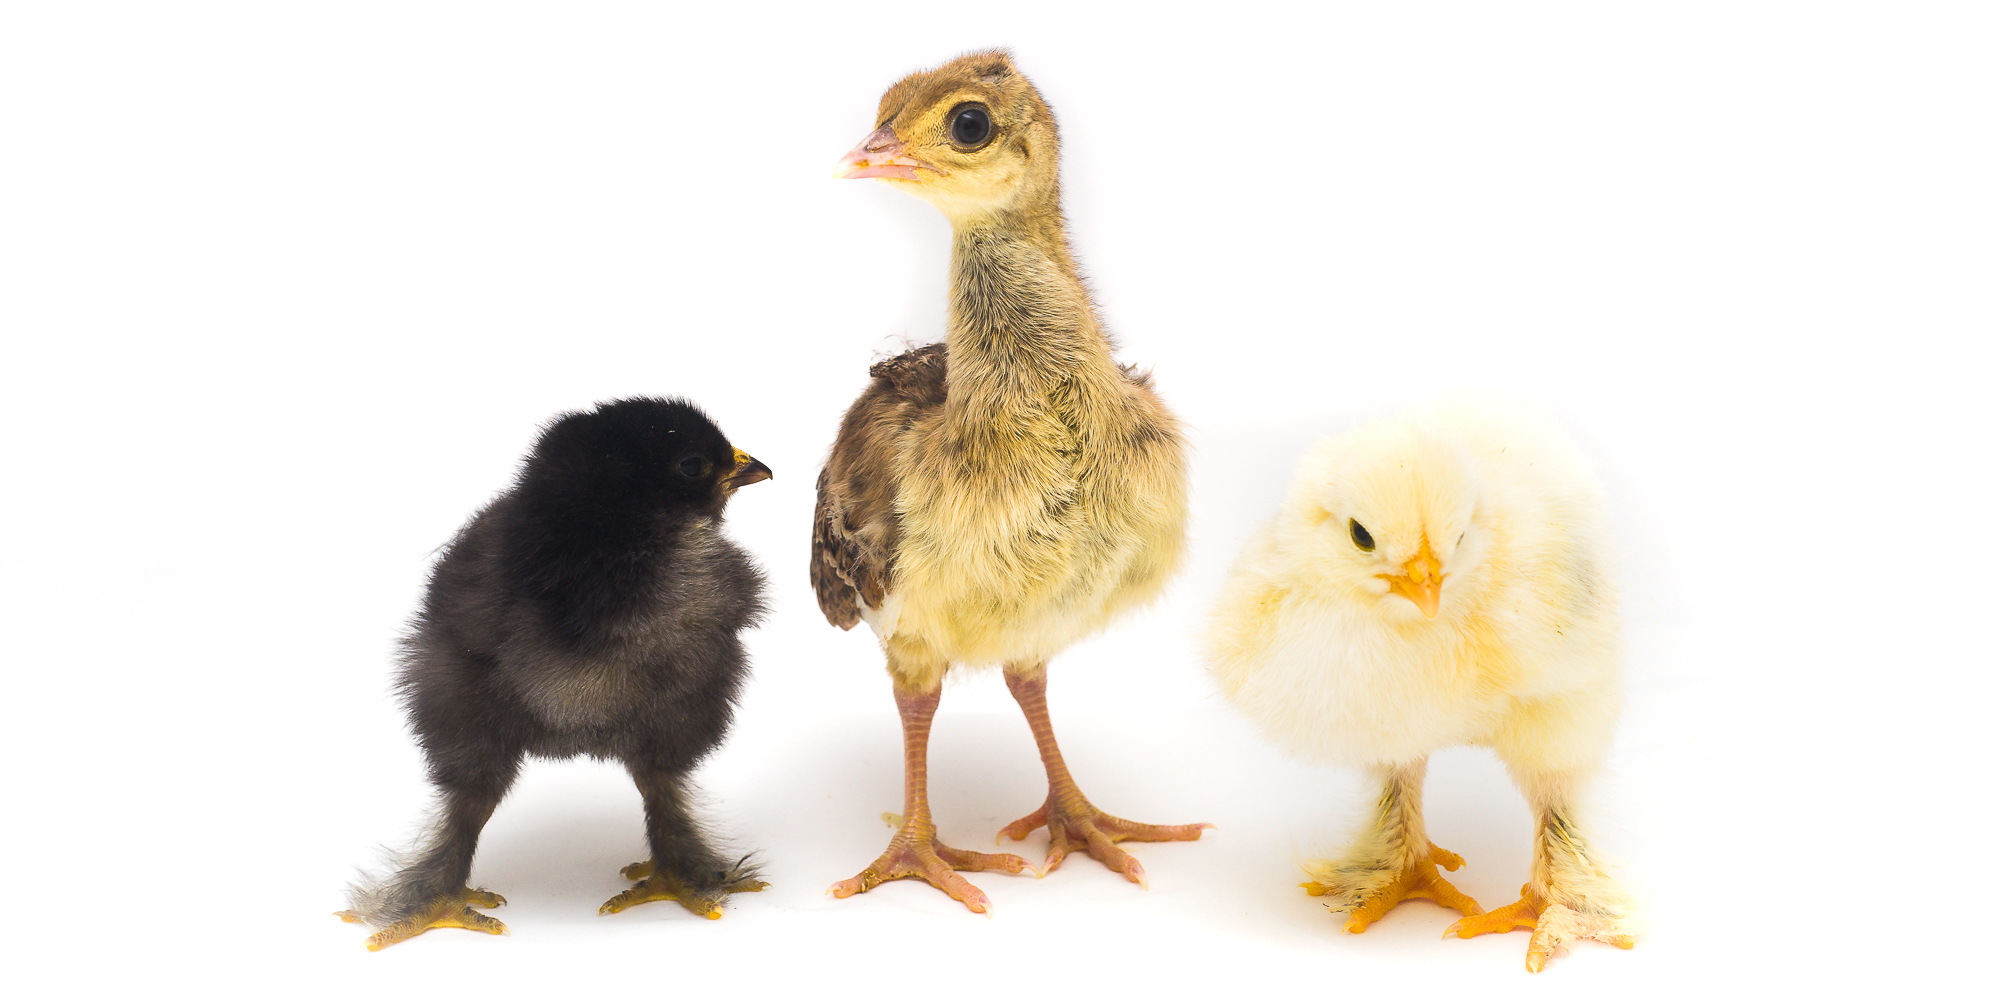 En gul kyckling och en svart kyckling och en påfågelunge i fotostudio.